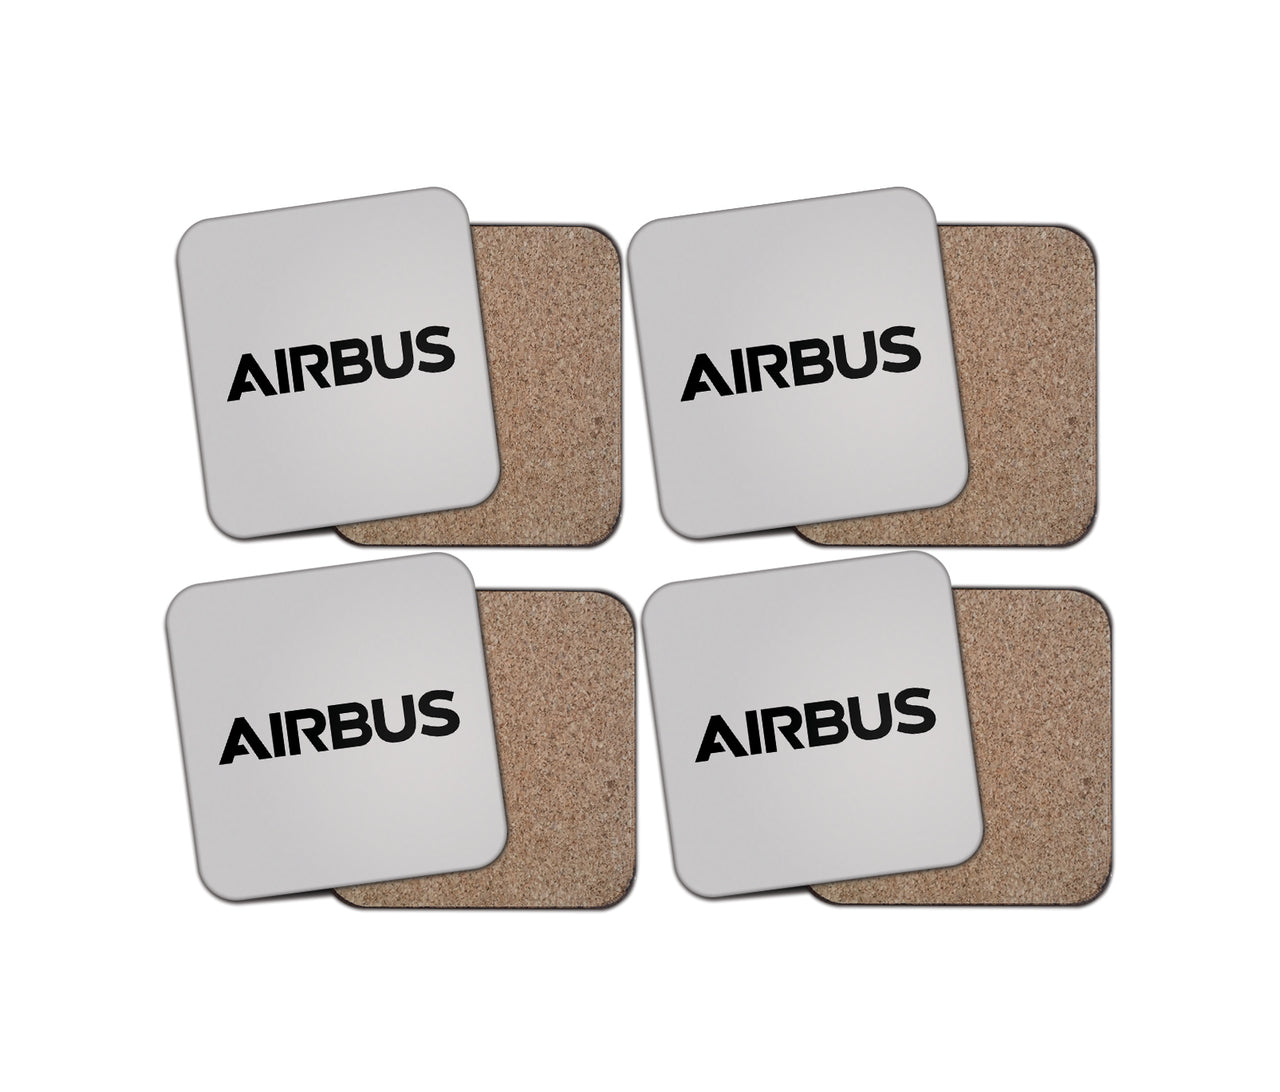 Airbus & Text Designed Coasters